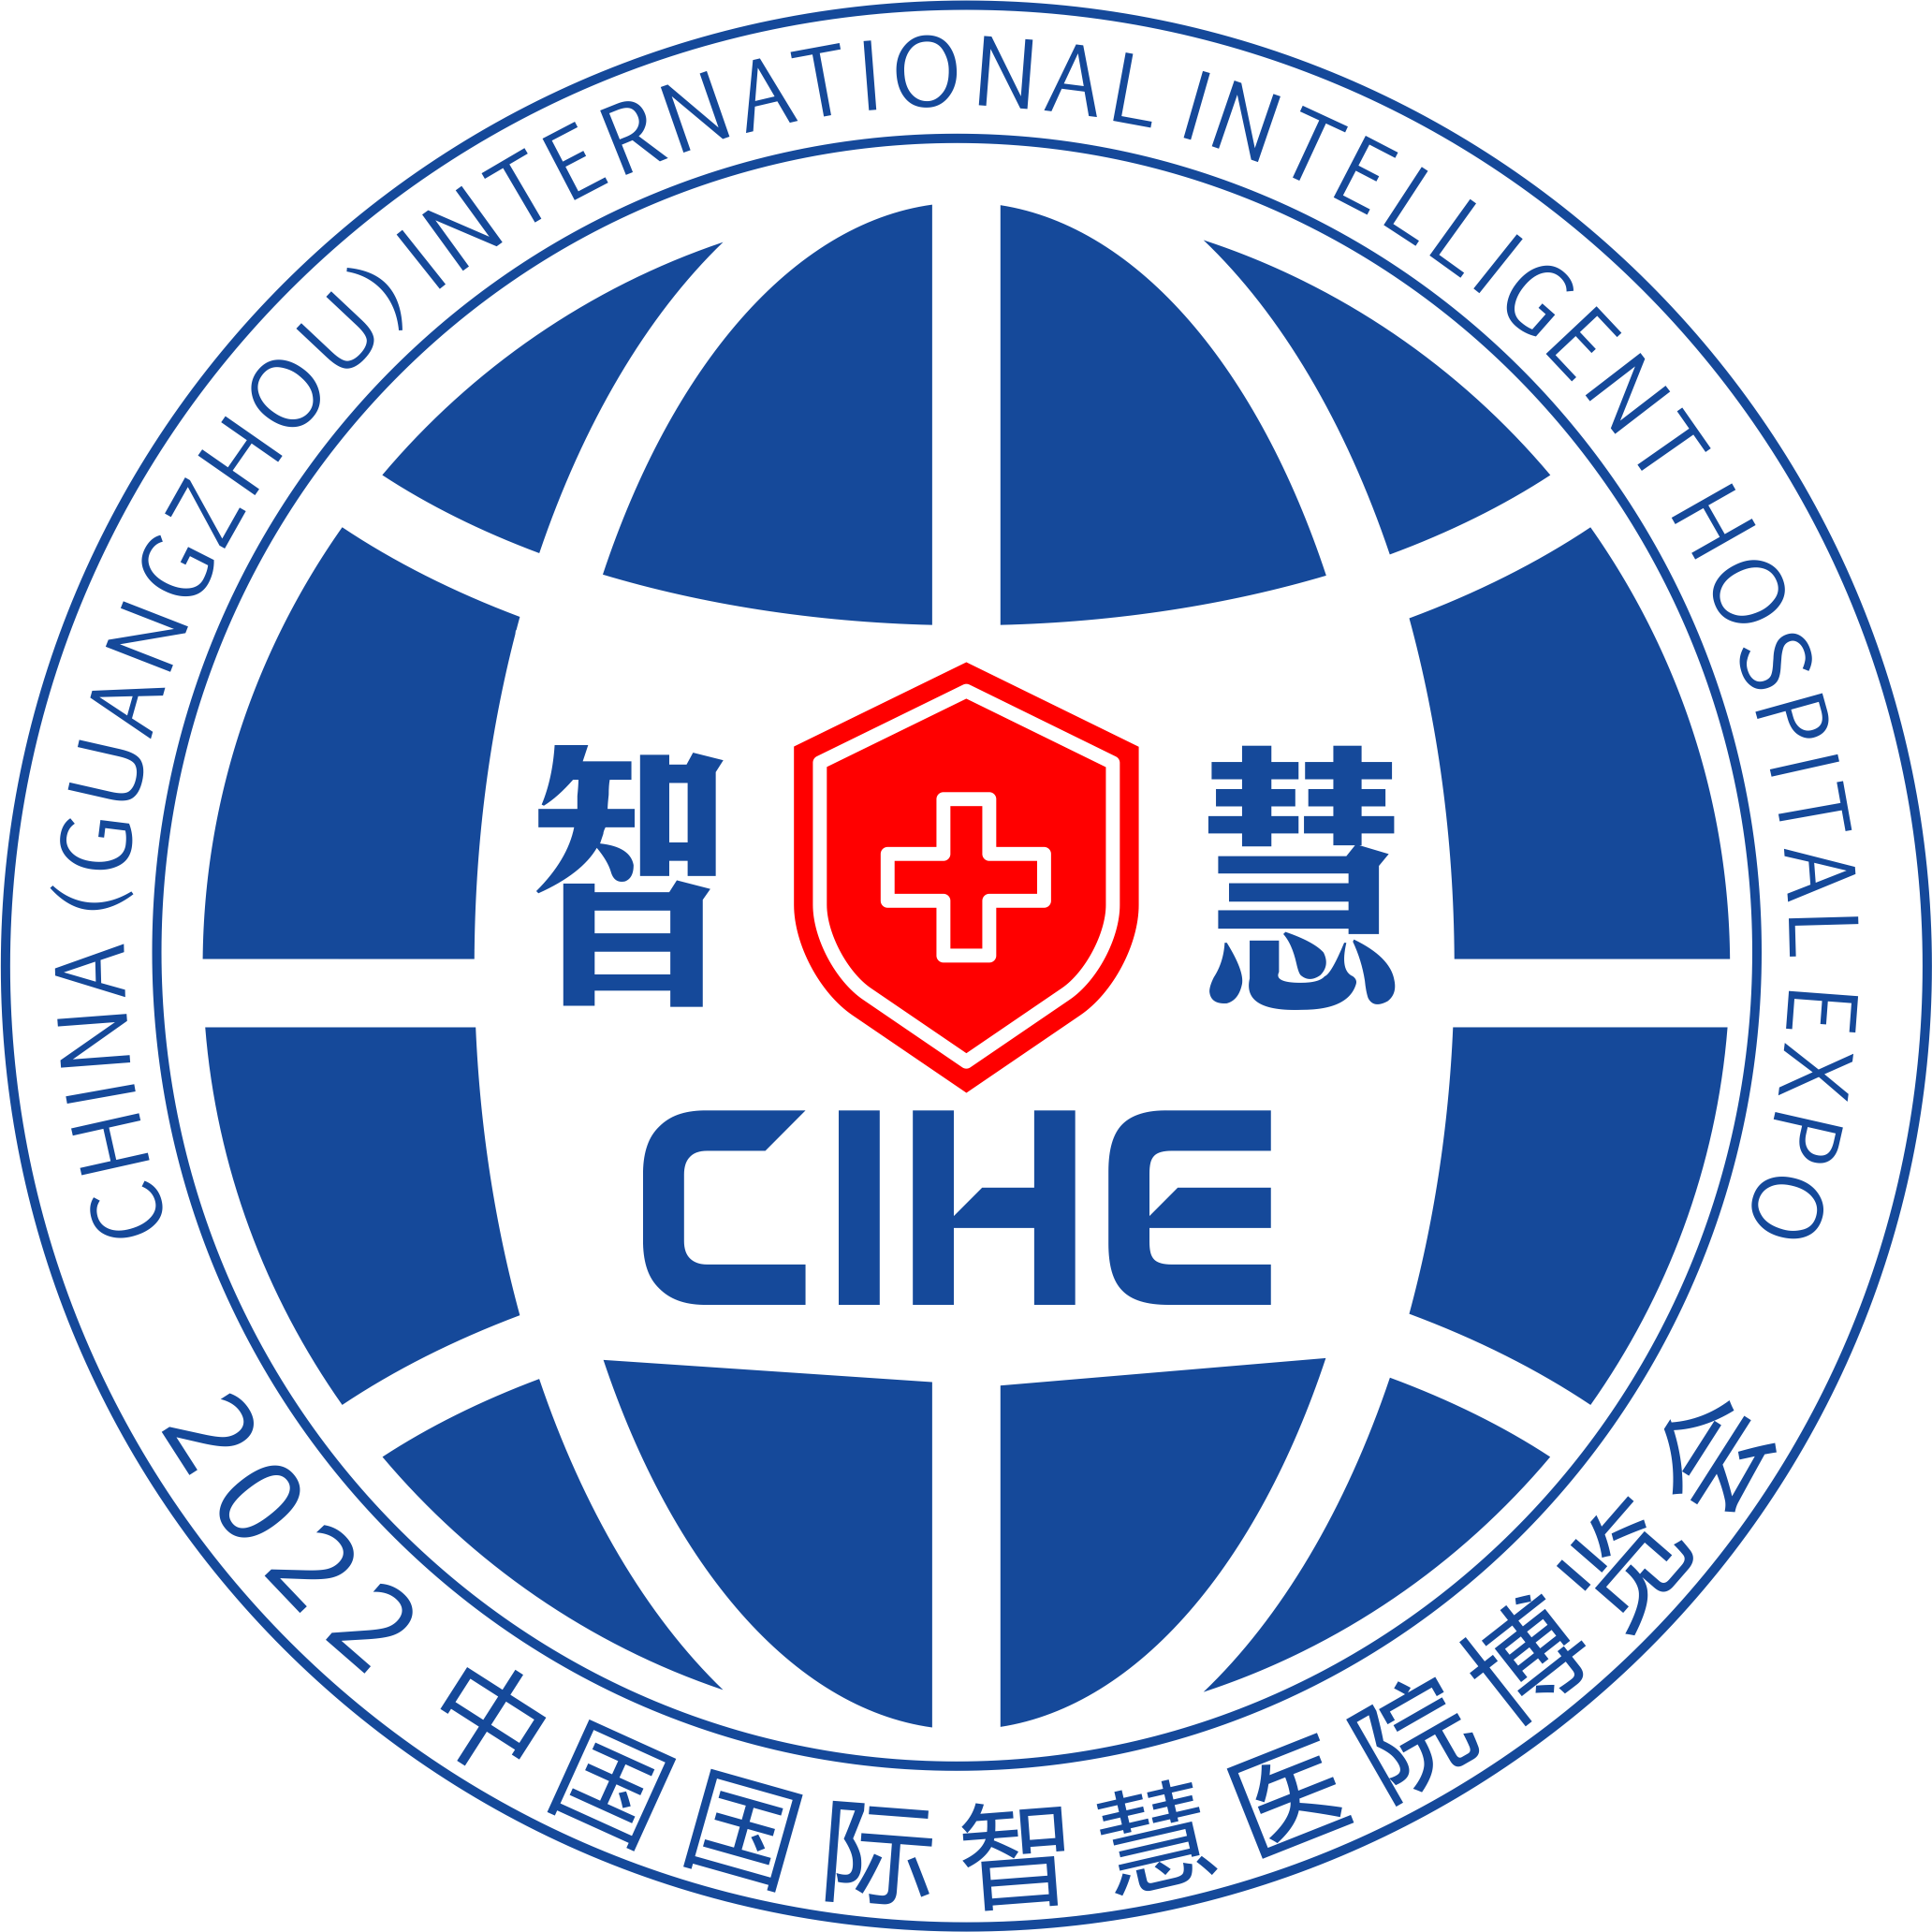 2022中国（广州）国际智慧医院博览会